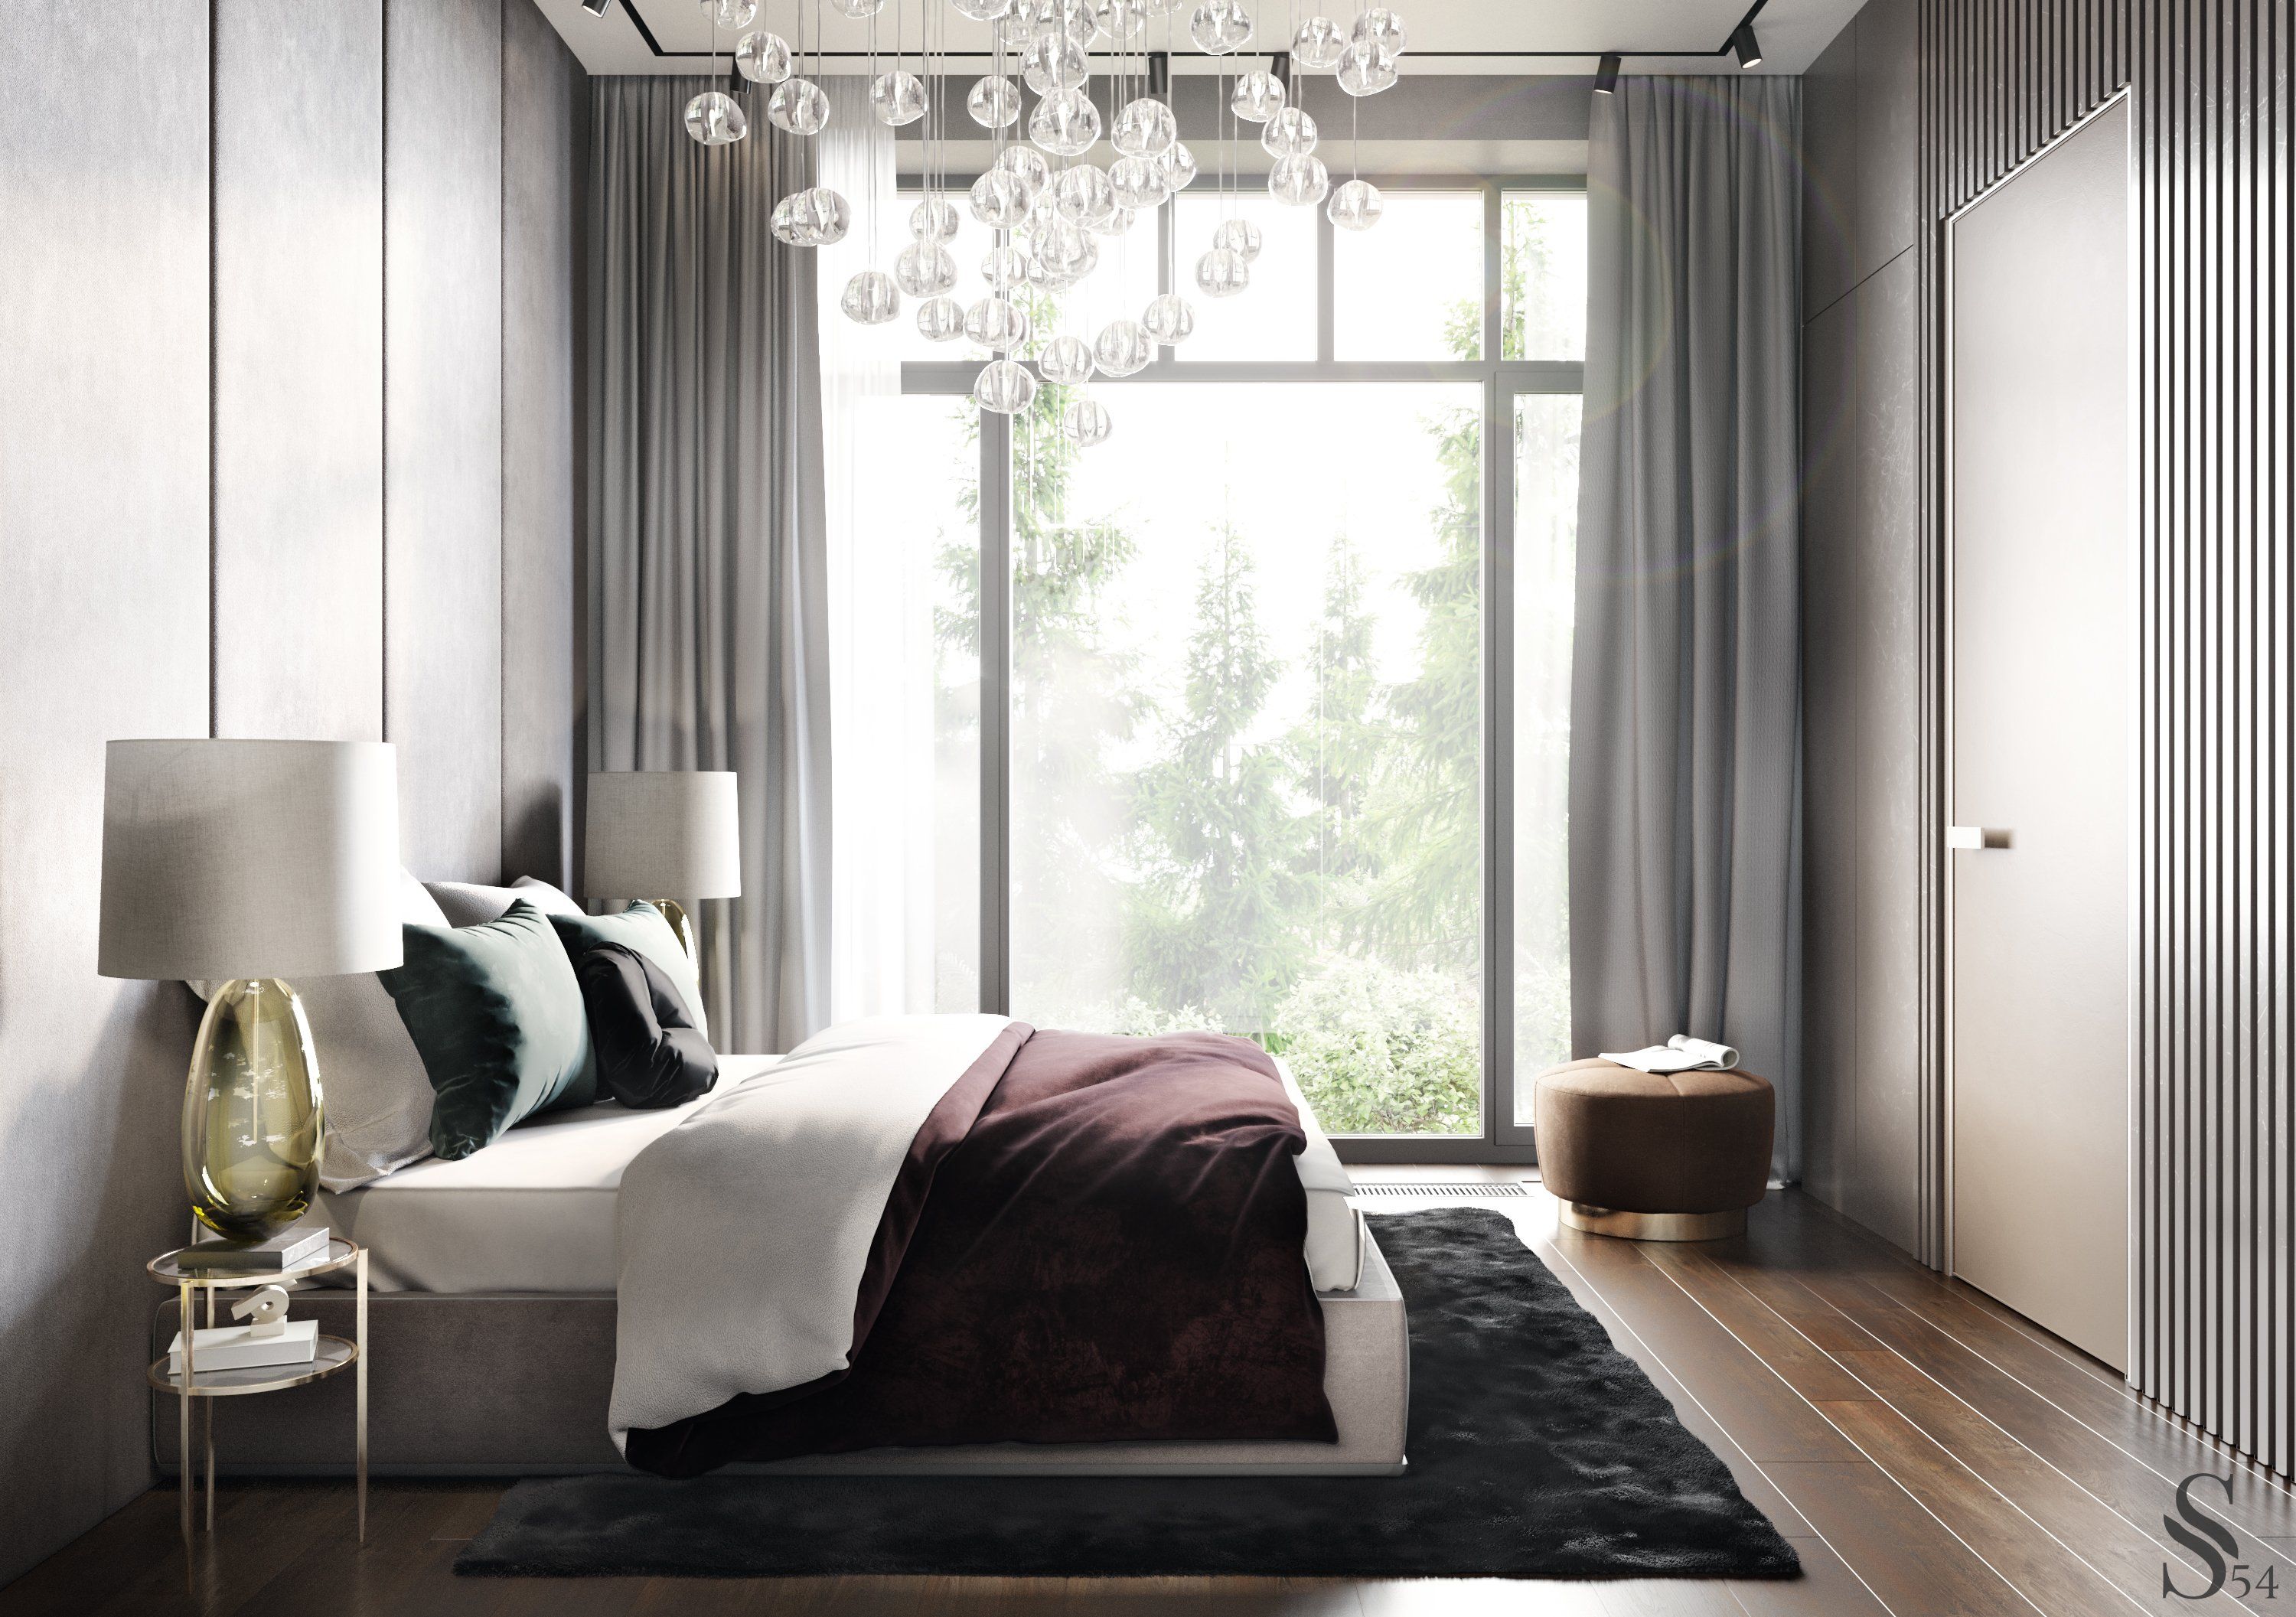 Панорамные окна создадут комфортную среду и подчеркнут высокий статус вашего дома